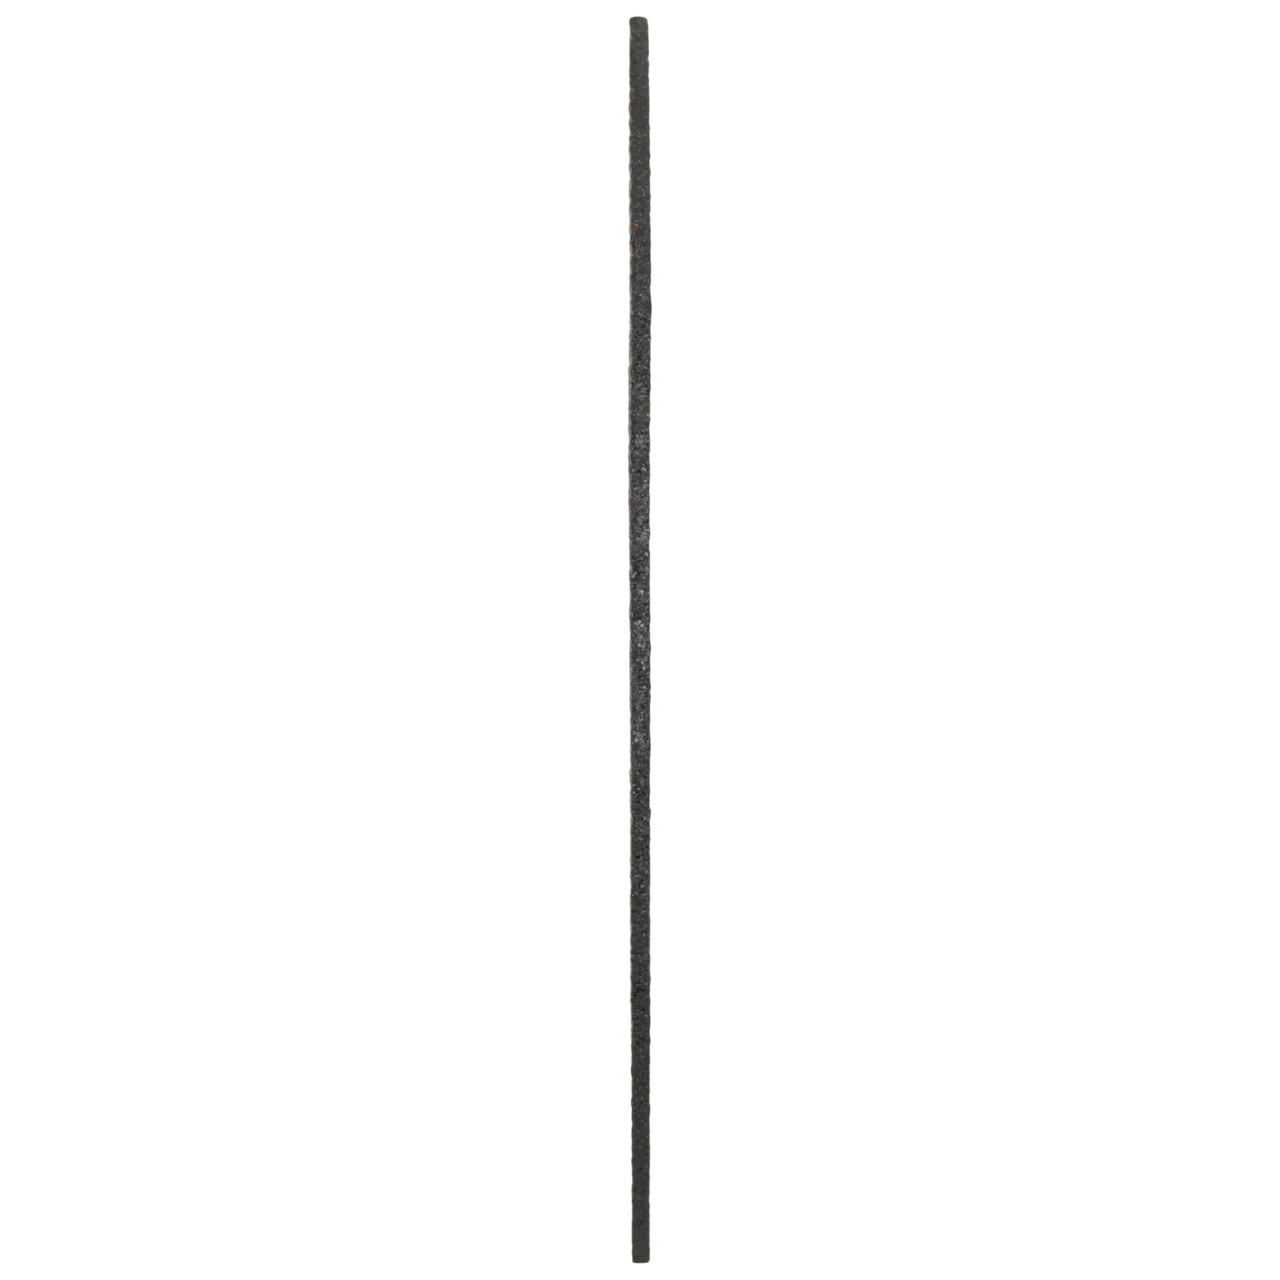 Tyrolit Dischi da taglio DxDxH 125x1.0x22.23 2in1 per acciaio e acciaio inox, forma: 41 - versione diritta, Art. 34332871